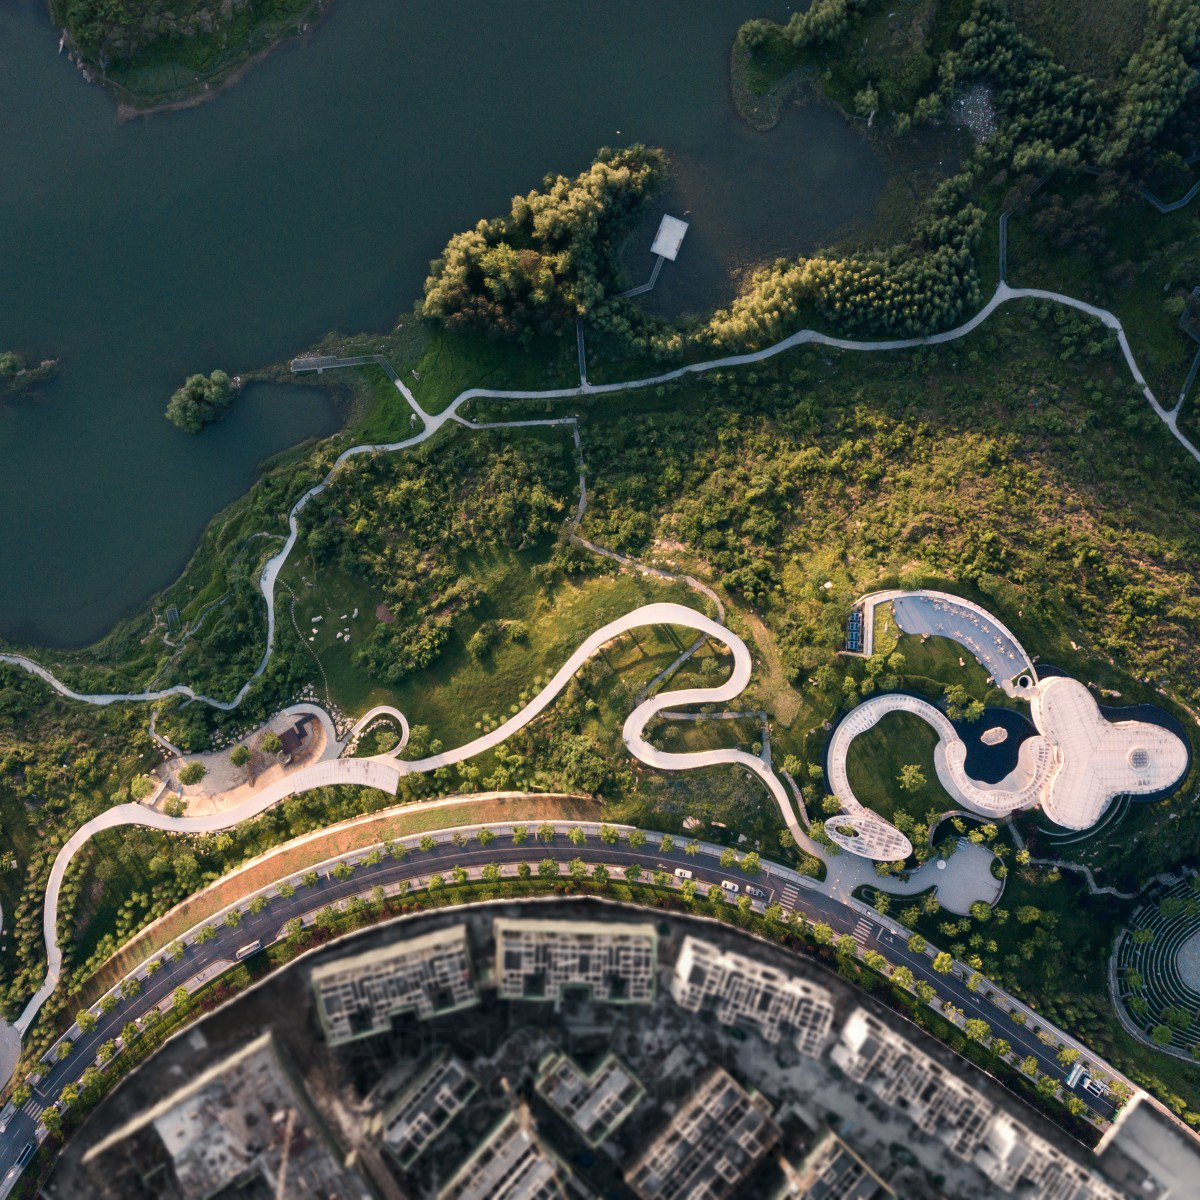 गुइयांग नई समुदाय पार्क: एक अद्वितीय और संवेदनशील डिजाइन